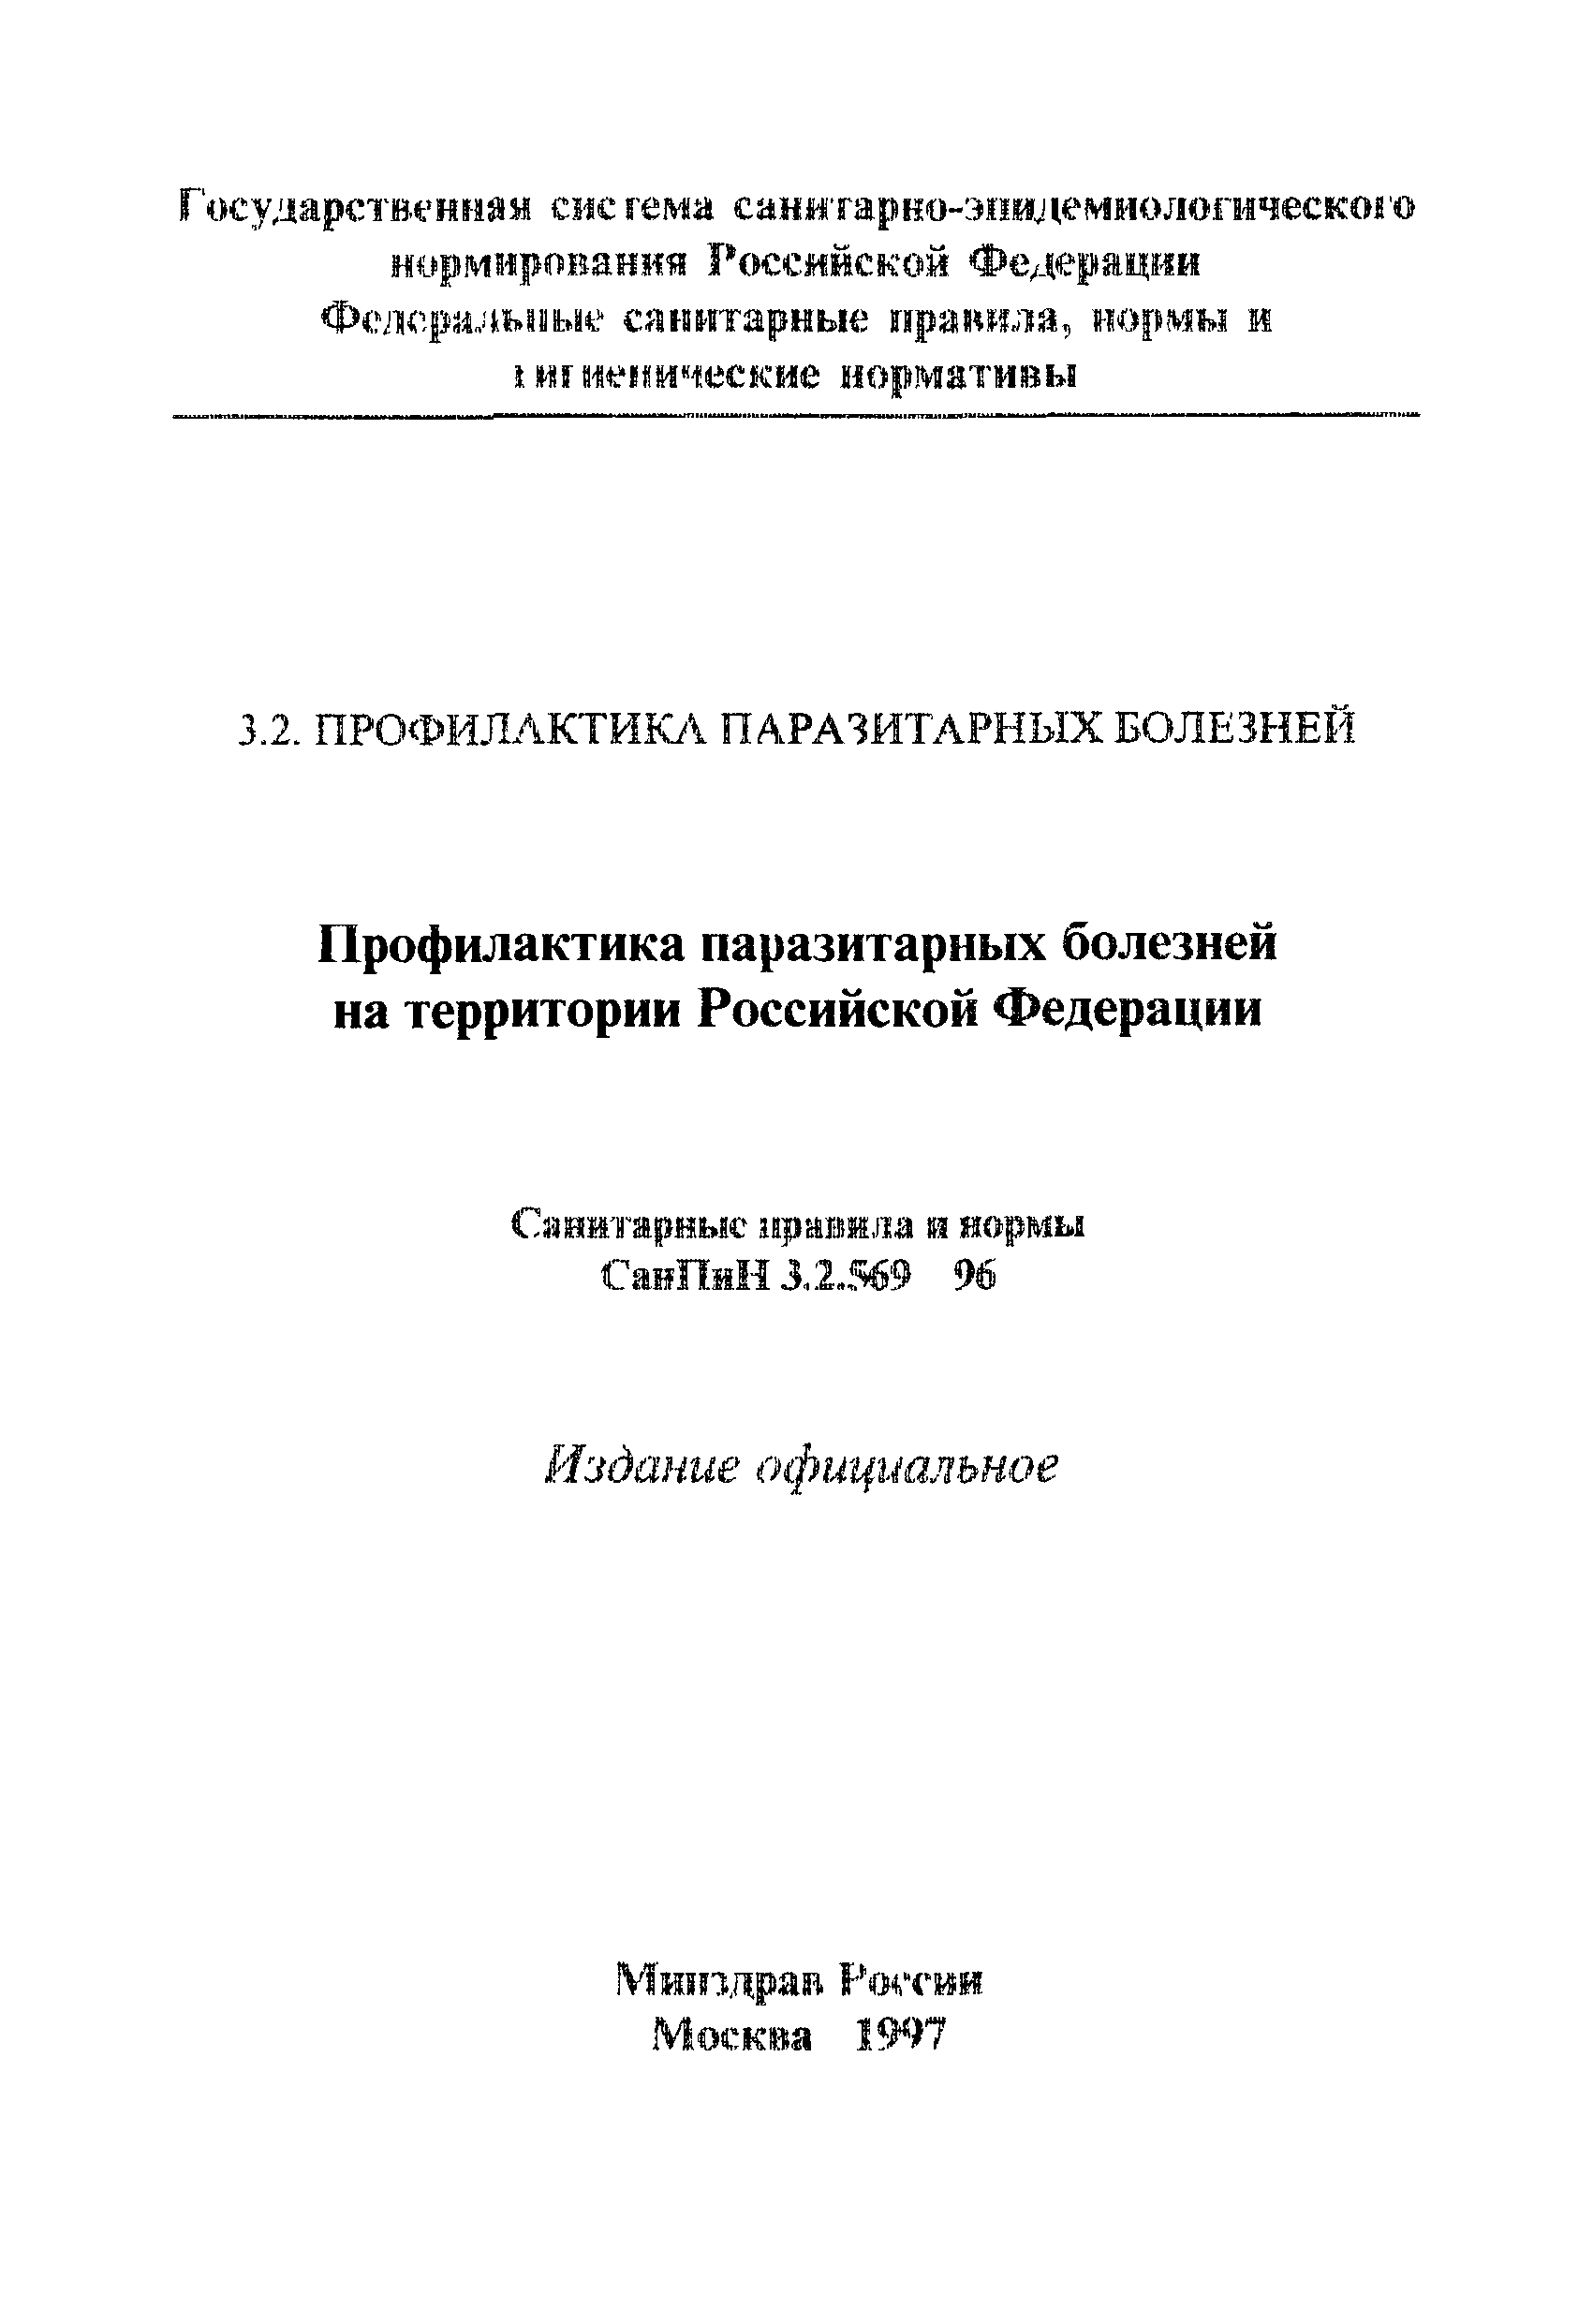 Сан пин 3.2.569-99 профилактика парадитарных болезней на территории РФ